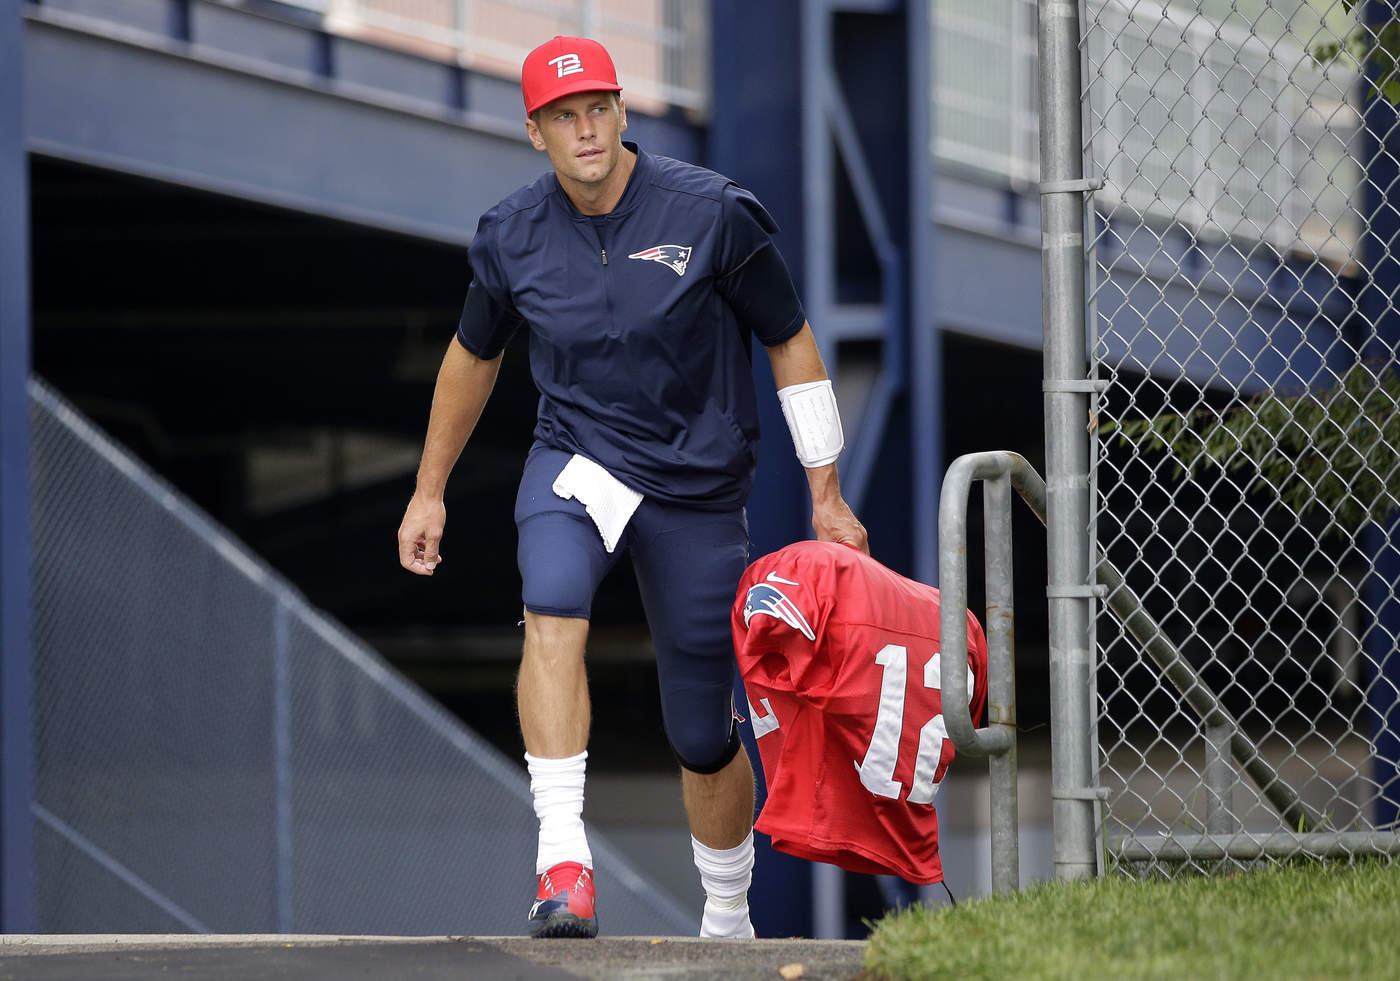 El experimentado mariscal de campo Tom Brady quiere llegar a su tercer Super
Bowl de forma consecutiva. (AP)